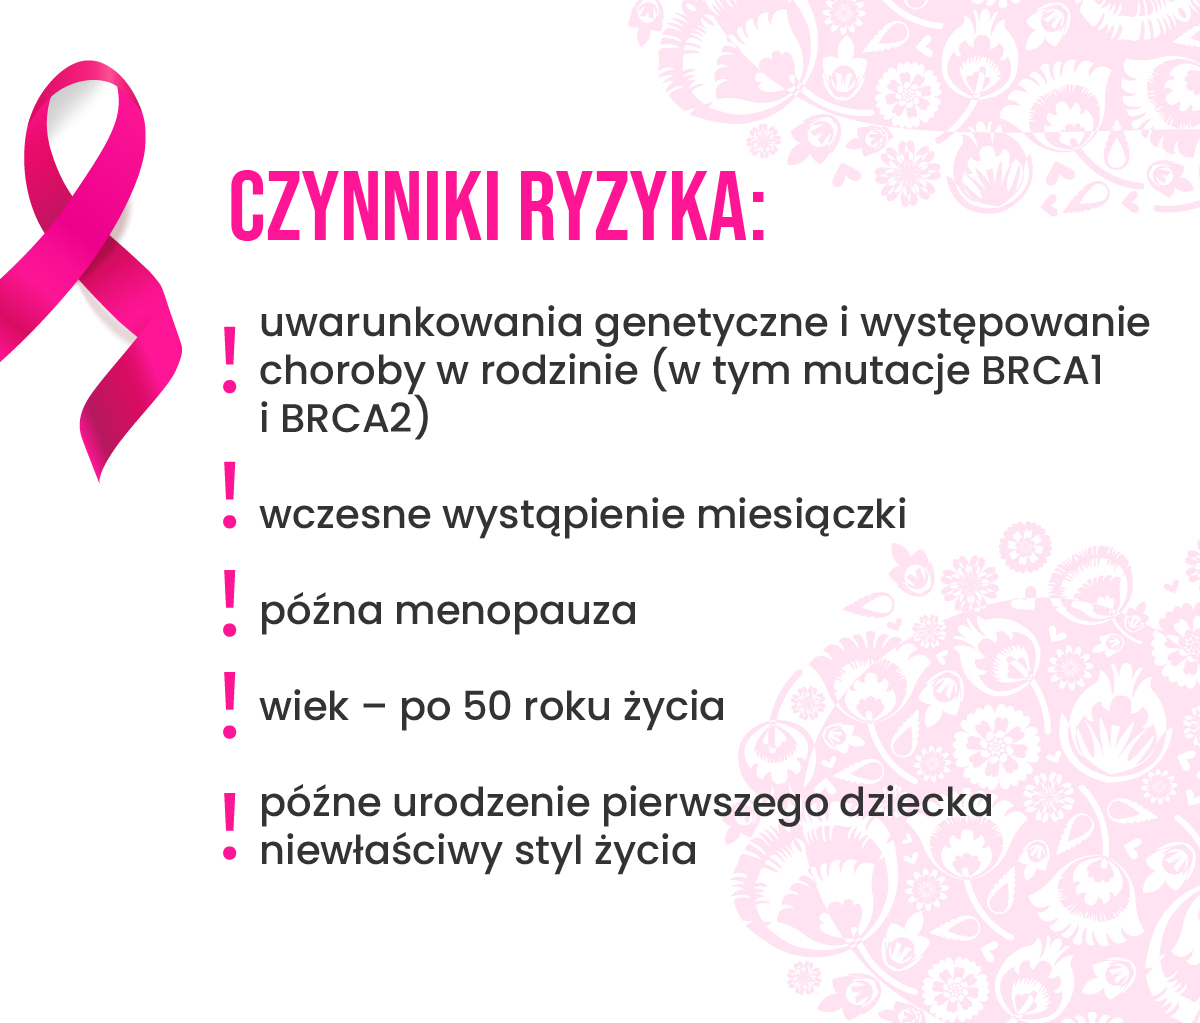 Czynniki ryzyka grafika do mammografii